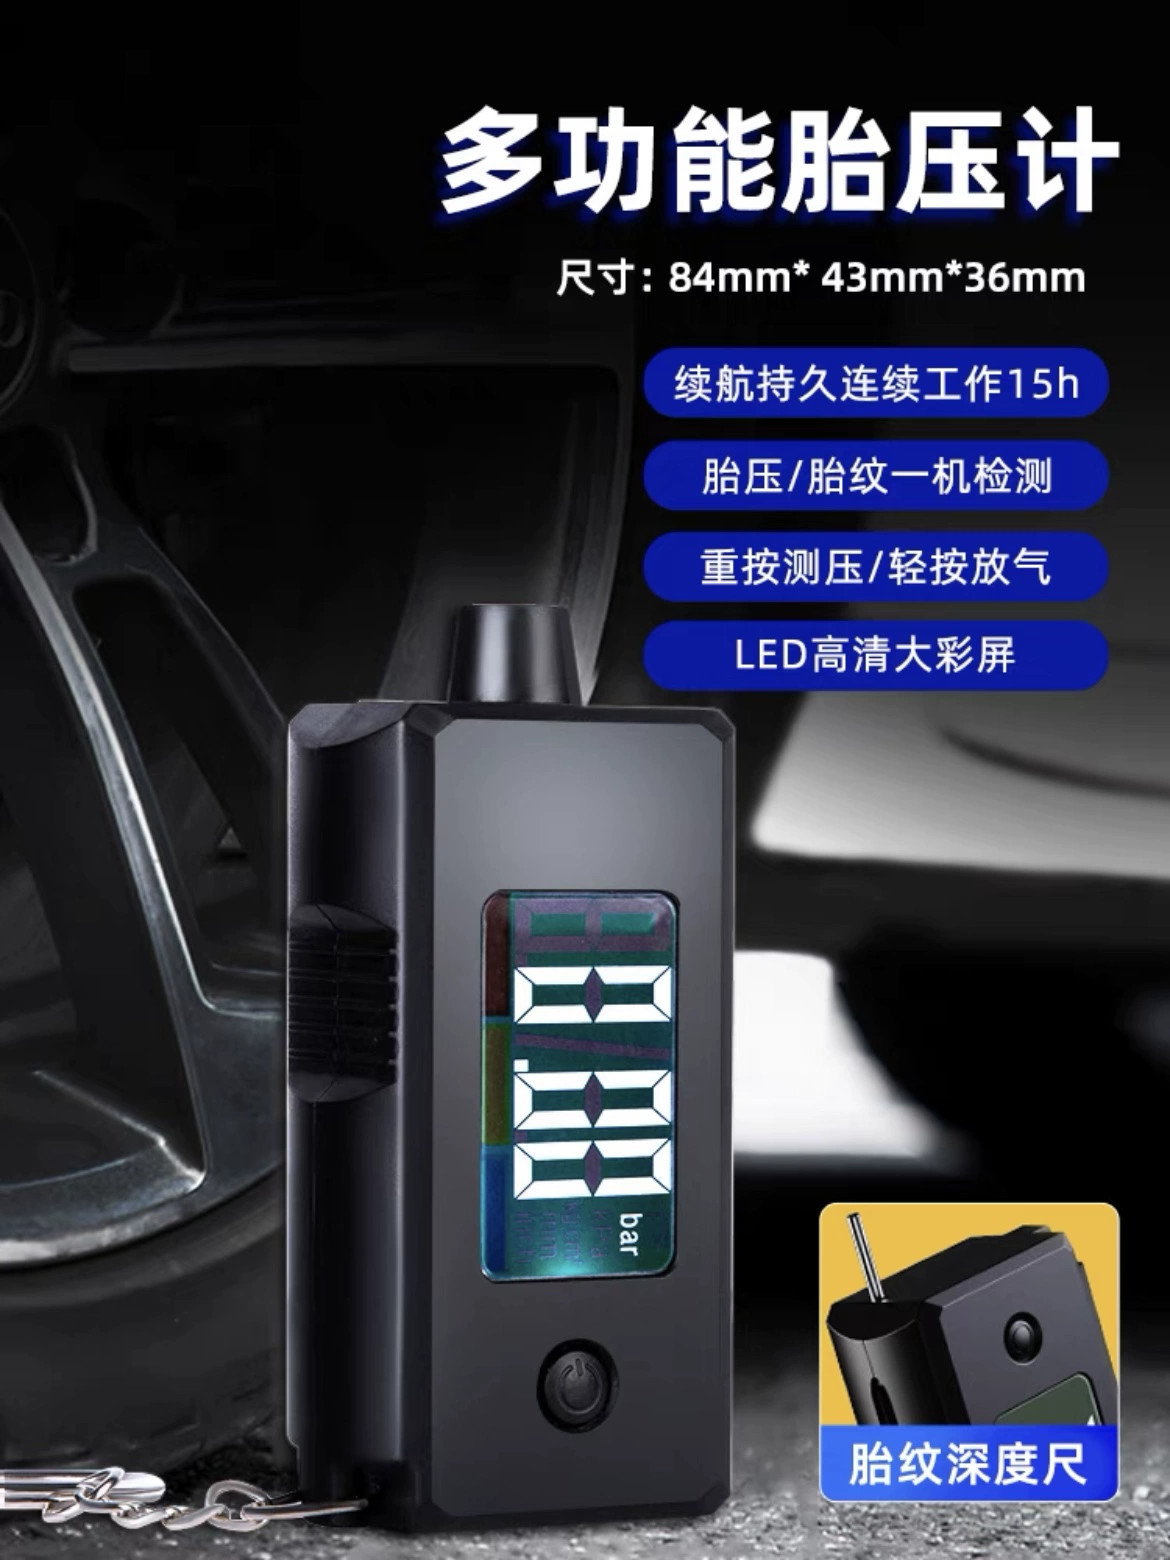 Đồng hồ đo áp suất lốp mạnh mẽ Máy dò áp suất có độ chính xác cao màn hình hiển thị kỹ thuật số phong vũ biểu màn hình đồng hồ đo áp suất lốp điện tử ô tô đo áp suất lốp ô tô bộ đo áp suất lốp ô tô 